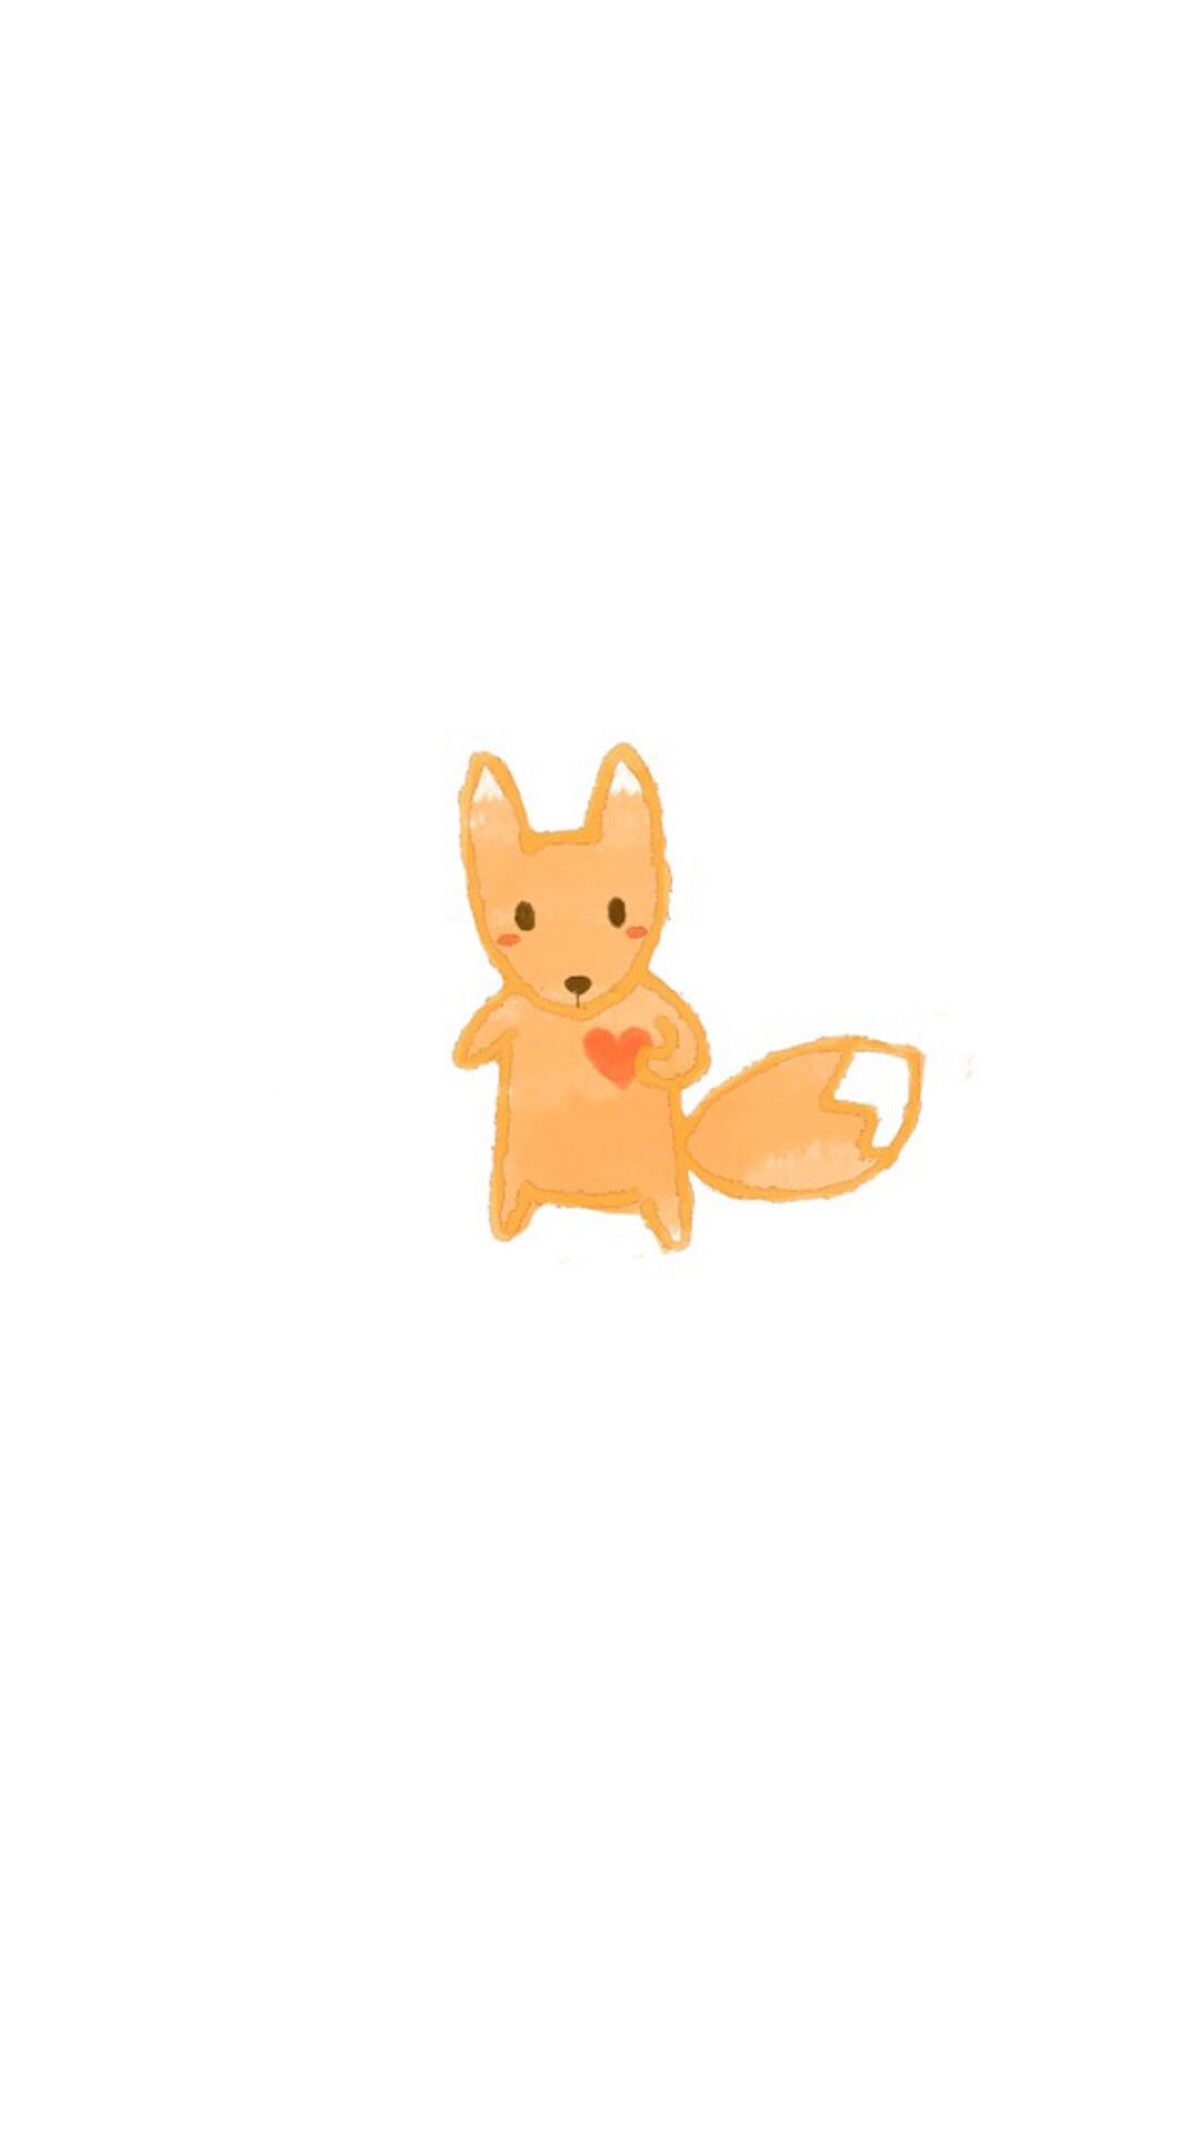 iphone6 锁屏 壁纸 平铺 可爱 宠物 动物 动漫 萌 喜欢 暖 小狐狸